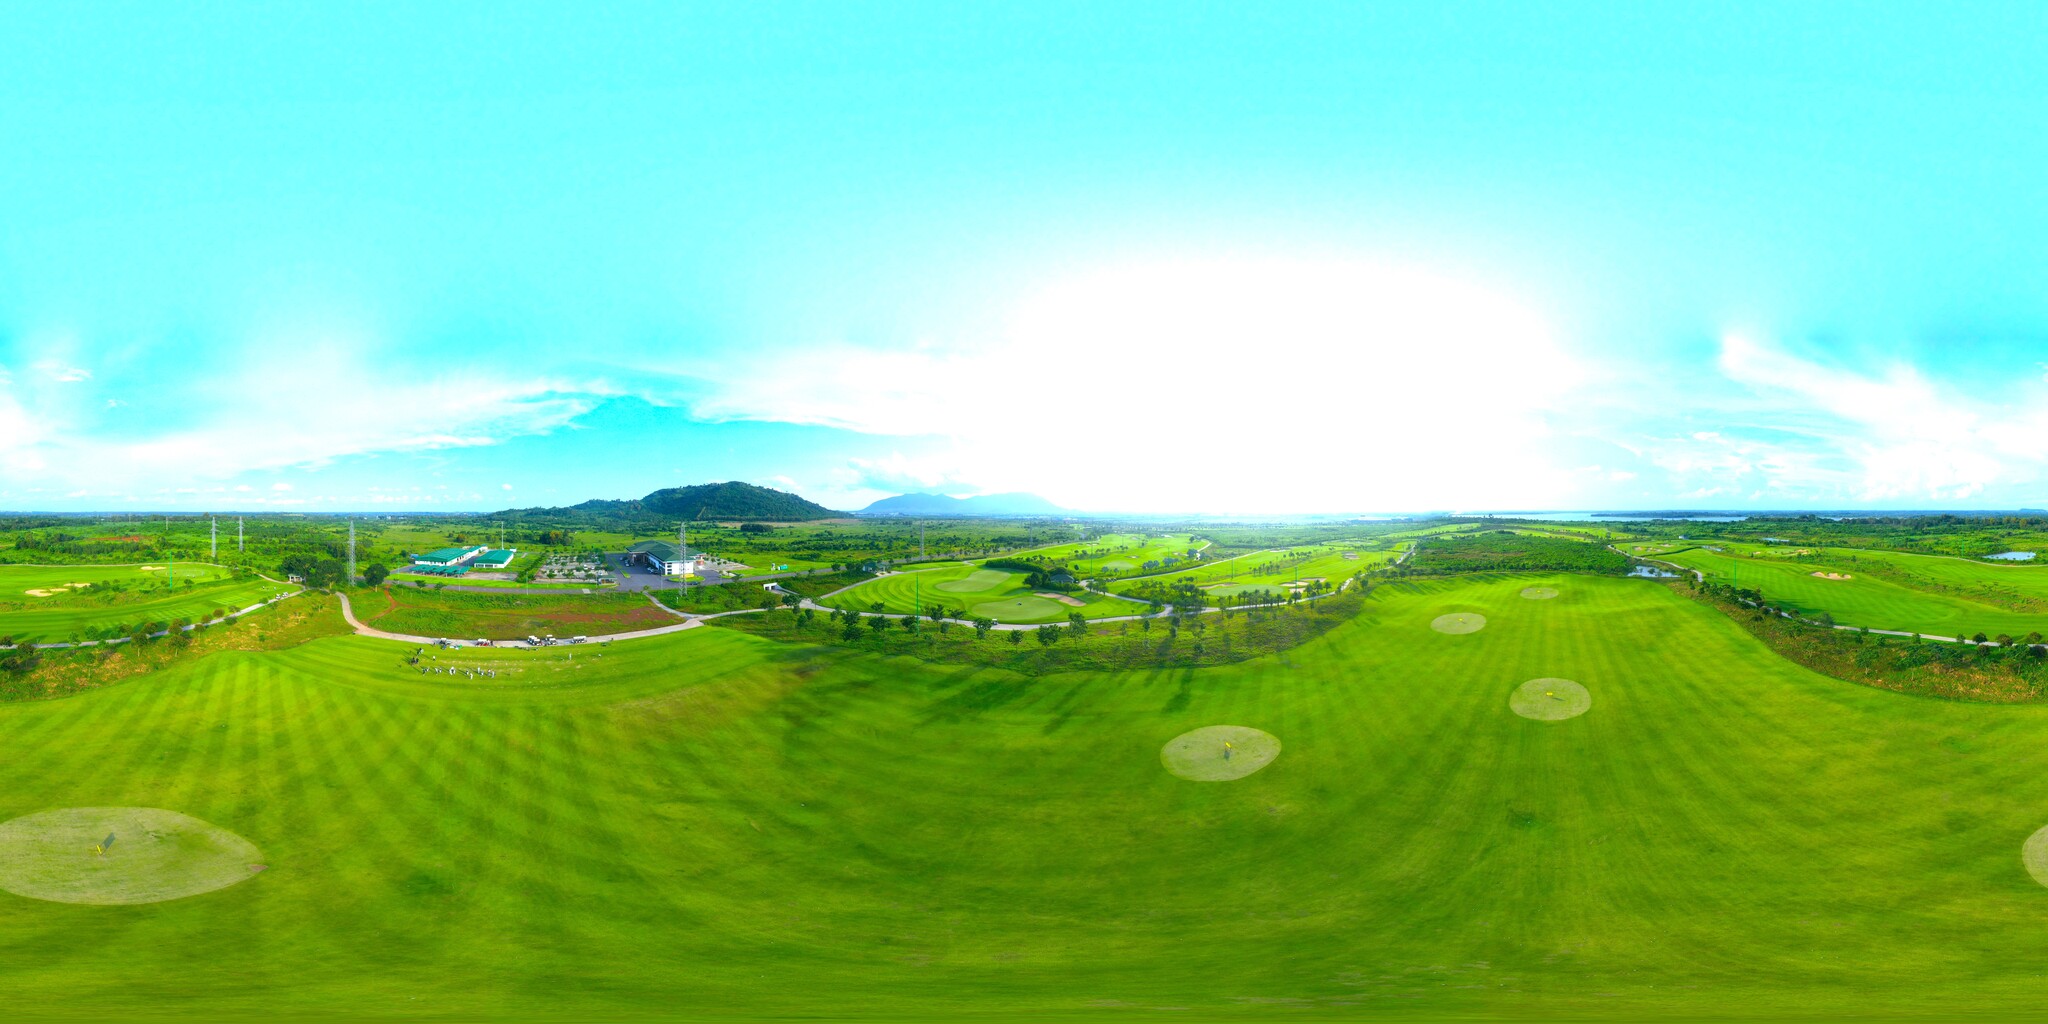 Sân golf Châu Đức gia tăng giá trị mang lại cho khách hàng KCN và các golfer